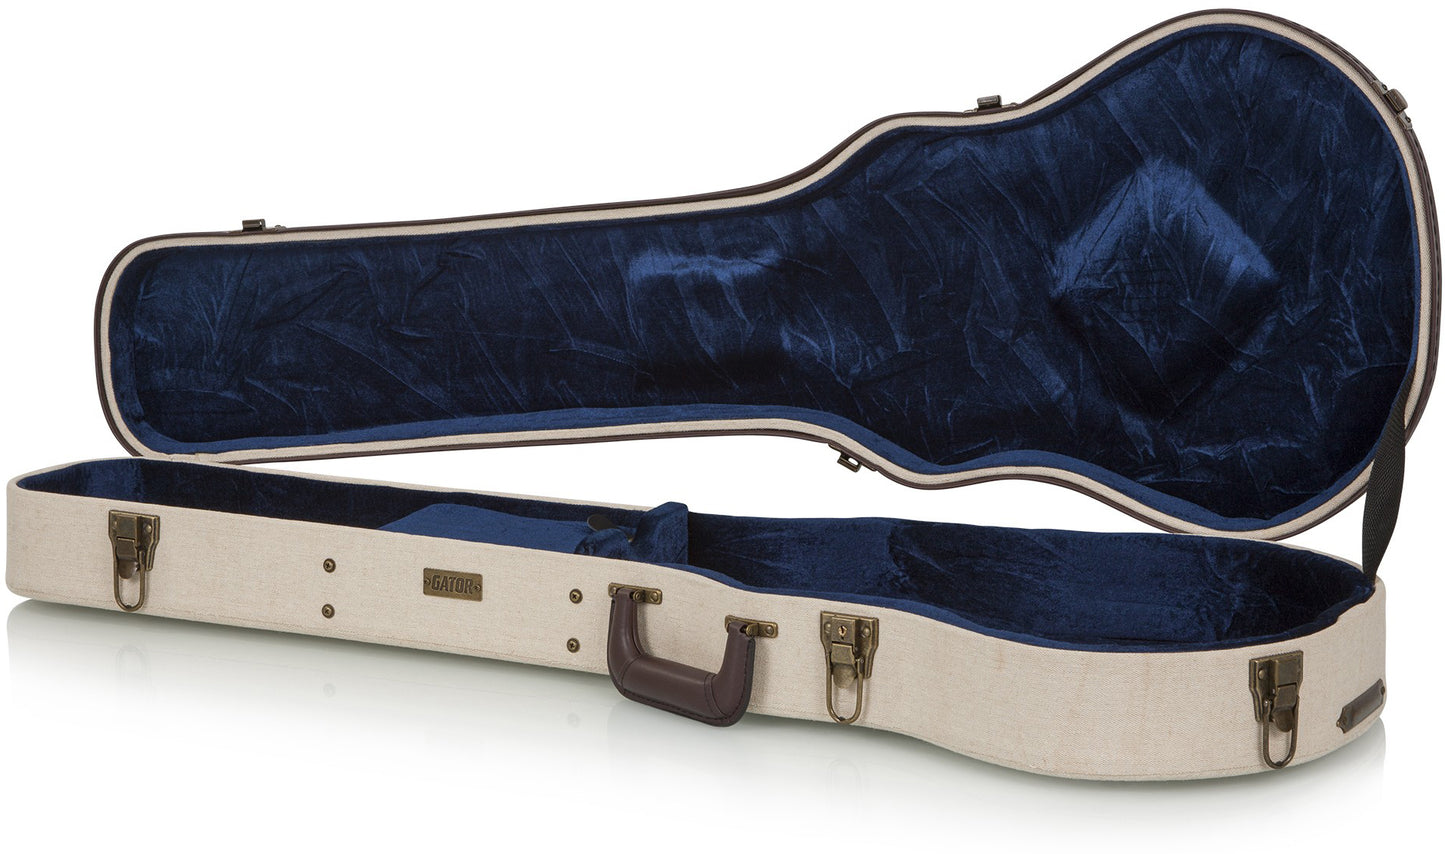 Gator GW-JM LPS Deluxe Wood Case for Les Paul Style Guitars Burlap Exterior